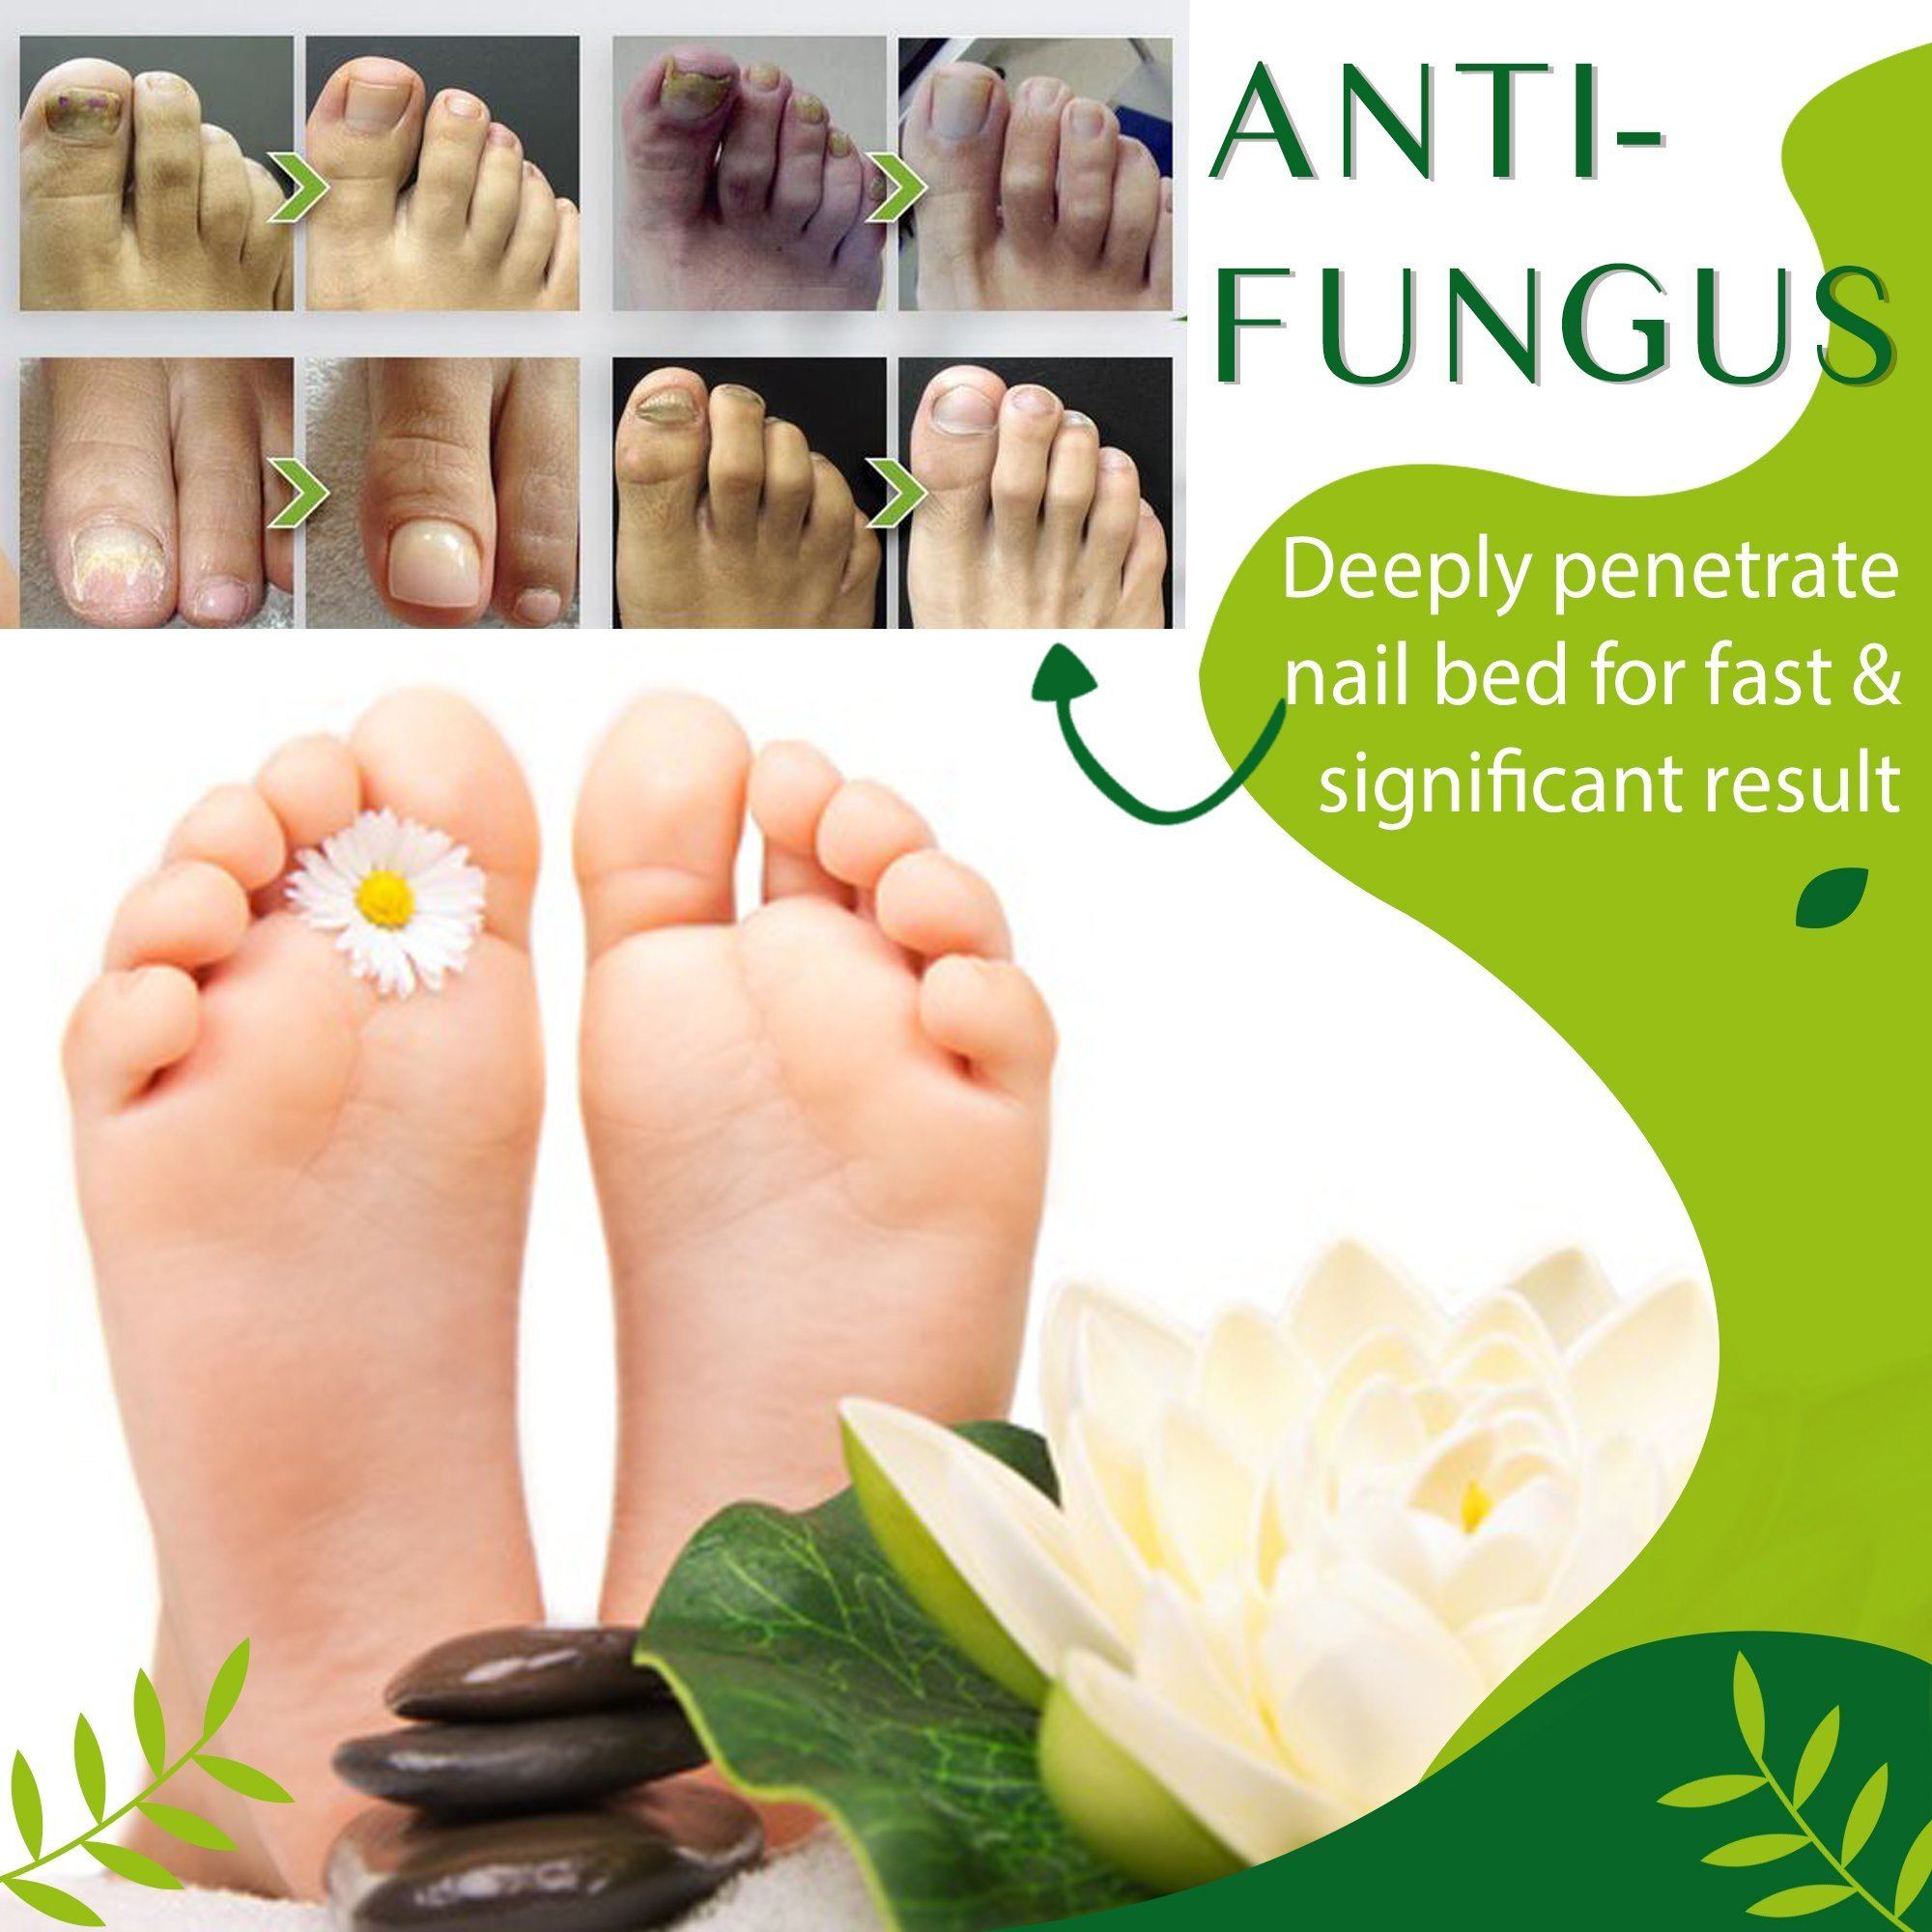 Anti-fungal Herbal Foot Soak